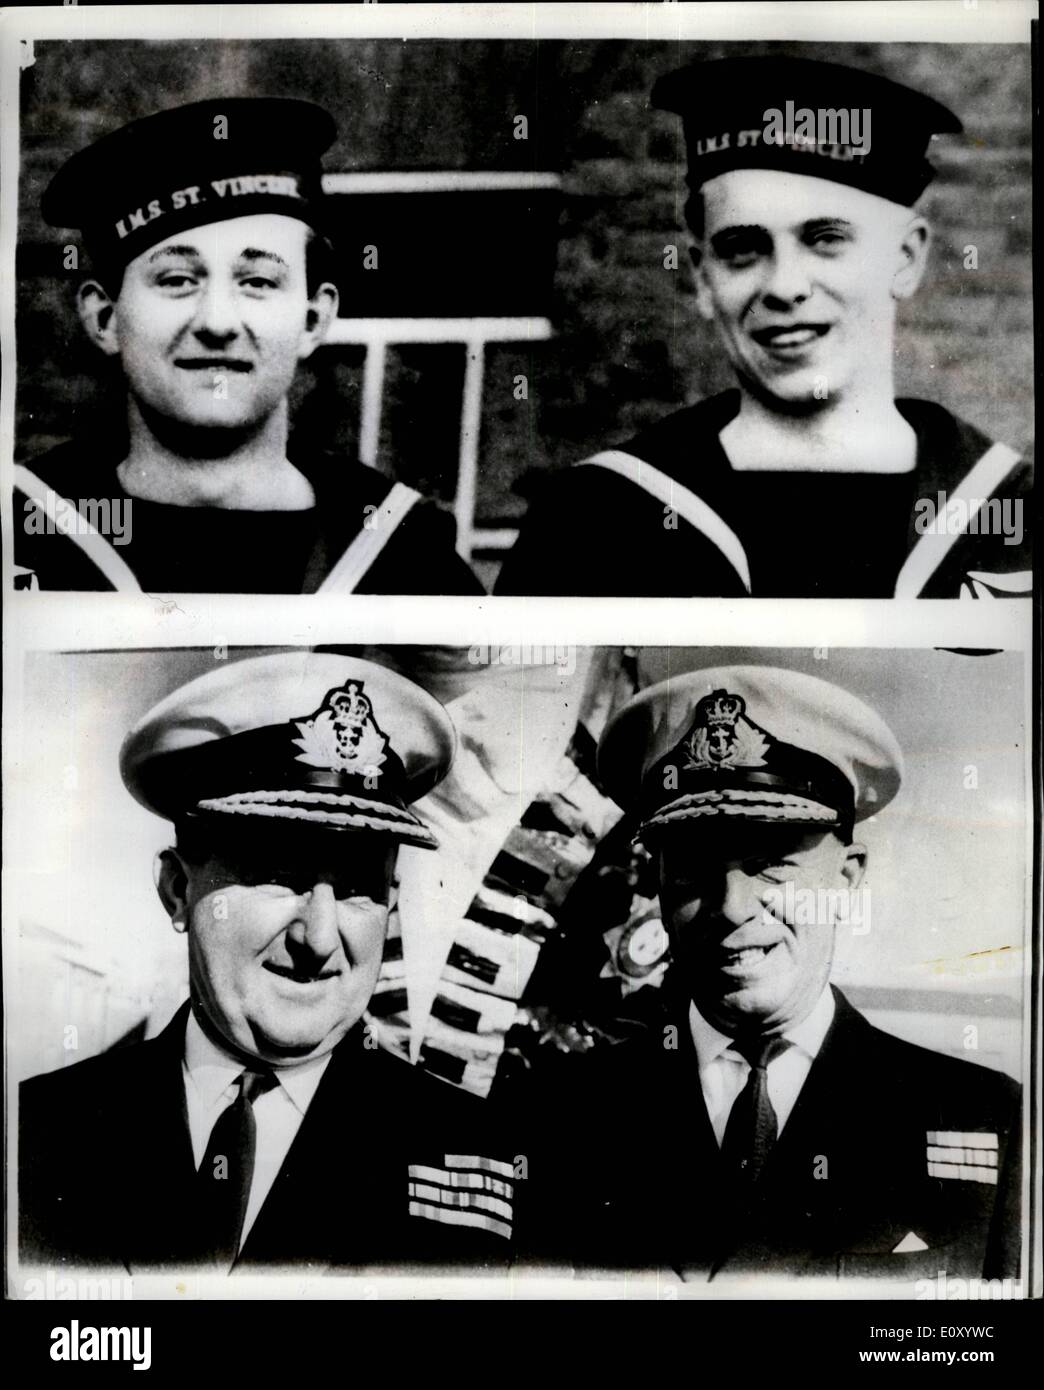 Febrero 02, 1968 - se unieron como aviadores navales de SEGUNDA CLASE Y VOLVER COMO ALMIRANTES TRASERO. Los aviadores navales clase adscrito Empson y Roberts, se unió a la flota del brazo de aire en el mismo día en abril de 1940, en el H.M.S. Vicente, el establecimiento de formación Gosport. Ayer, hicieron un nostalgico retorno allí - pero ahora son Contralmirante Derek Empson, bandera oficial portaaviones, y Contralmirante S.K. Roberts, D.S.O., bandera oficial naval Flying Training. Muestra fotográfica:- (imagen superior), 1940: Gosbort aviadores navales Segunda Clase Roberts (izquierda) y Empson, (imagen inferior): Gosport 1968 Foto de stock